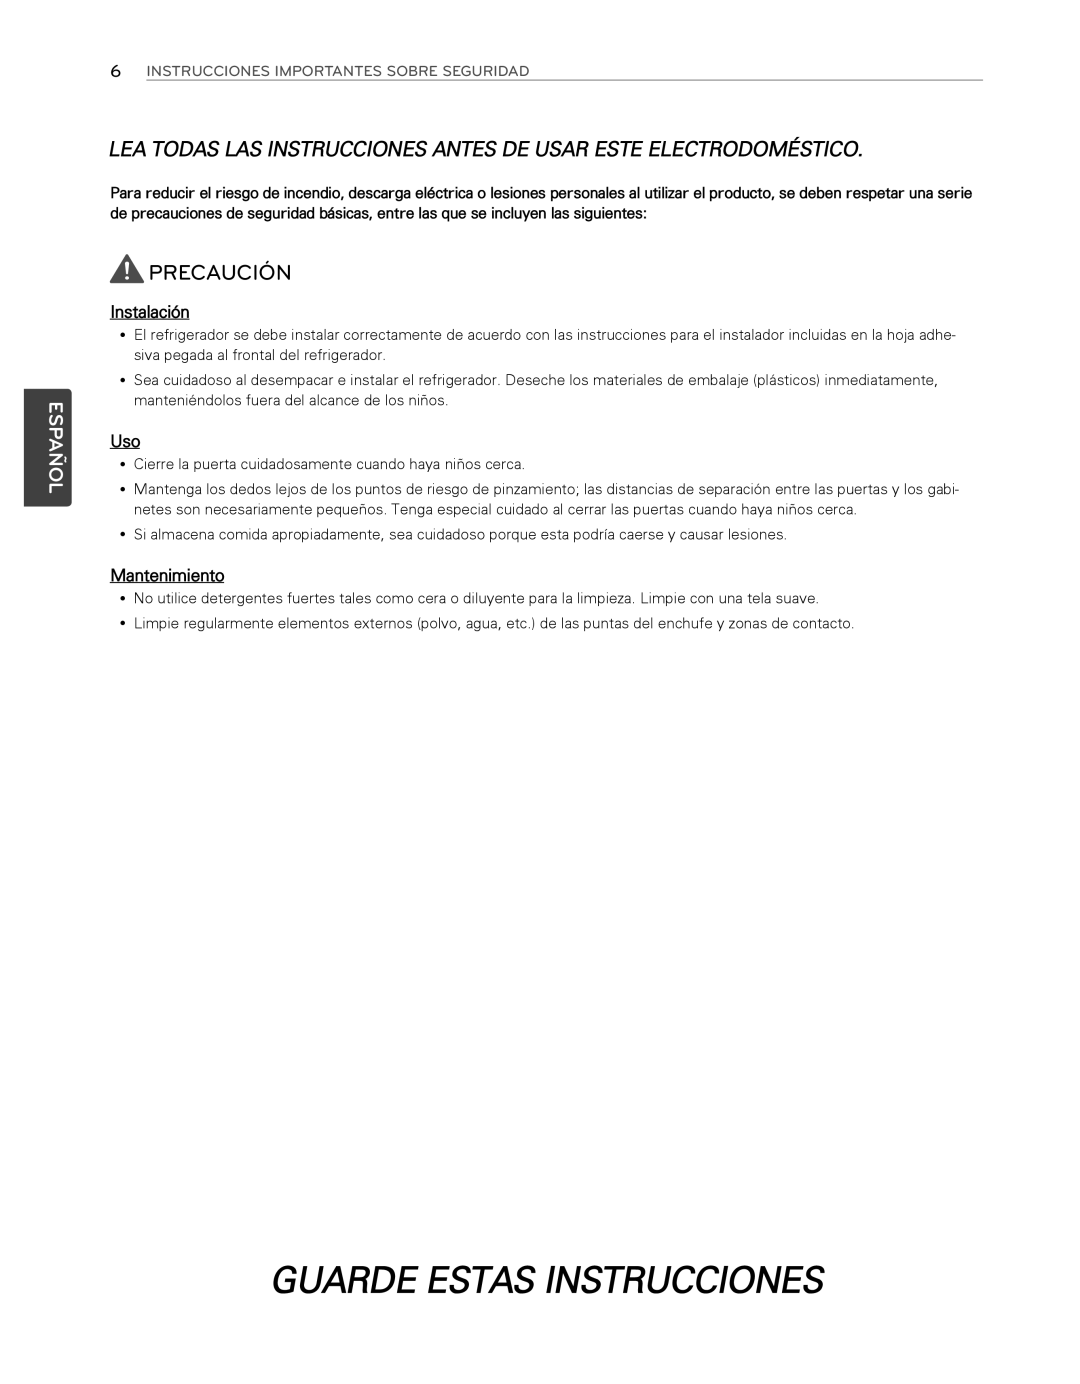 LG Electronics LFX25974SB, LFX25974ST Guarde Estas Instrucciones, Precaución, Español, Instalación, Mantenimiento 